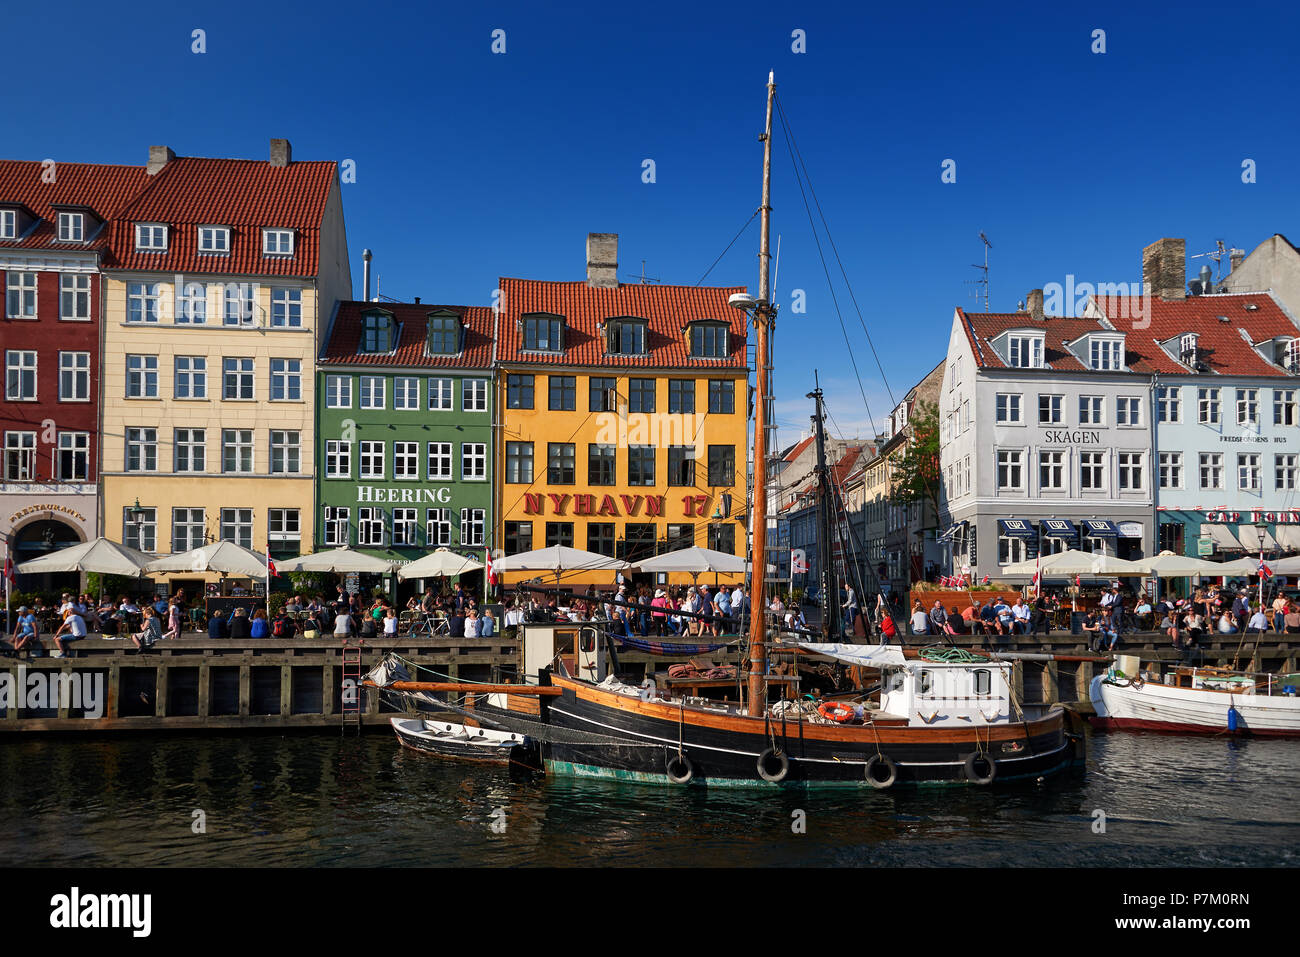 Quartier touristique de nyhavn de Copenhague, capitale du Danemark Banque D'Images